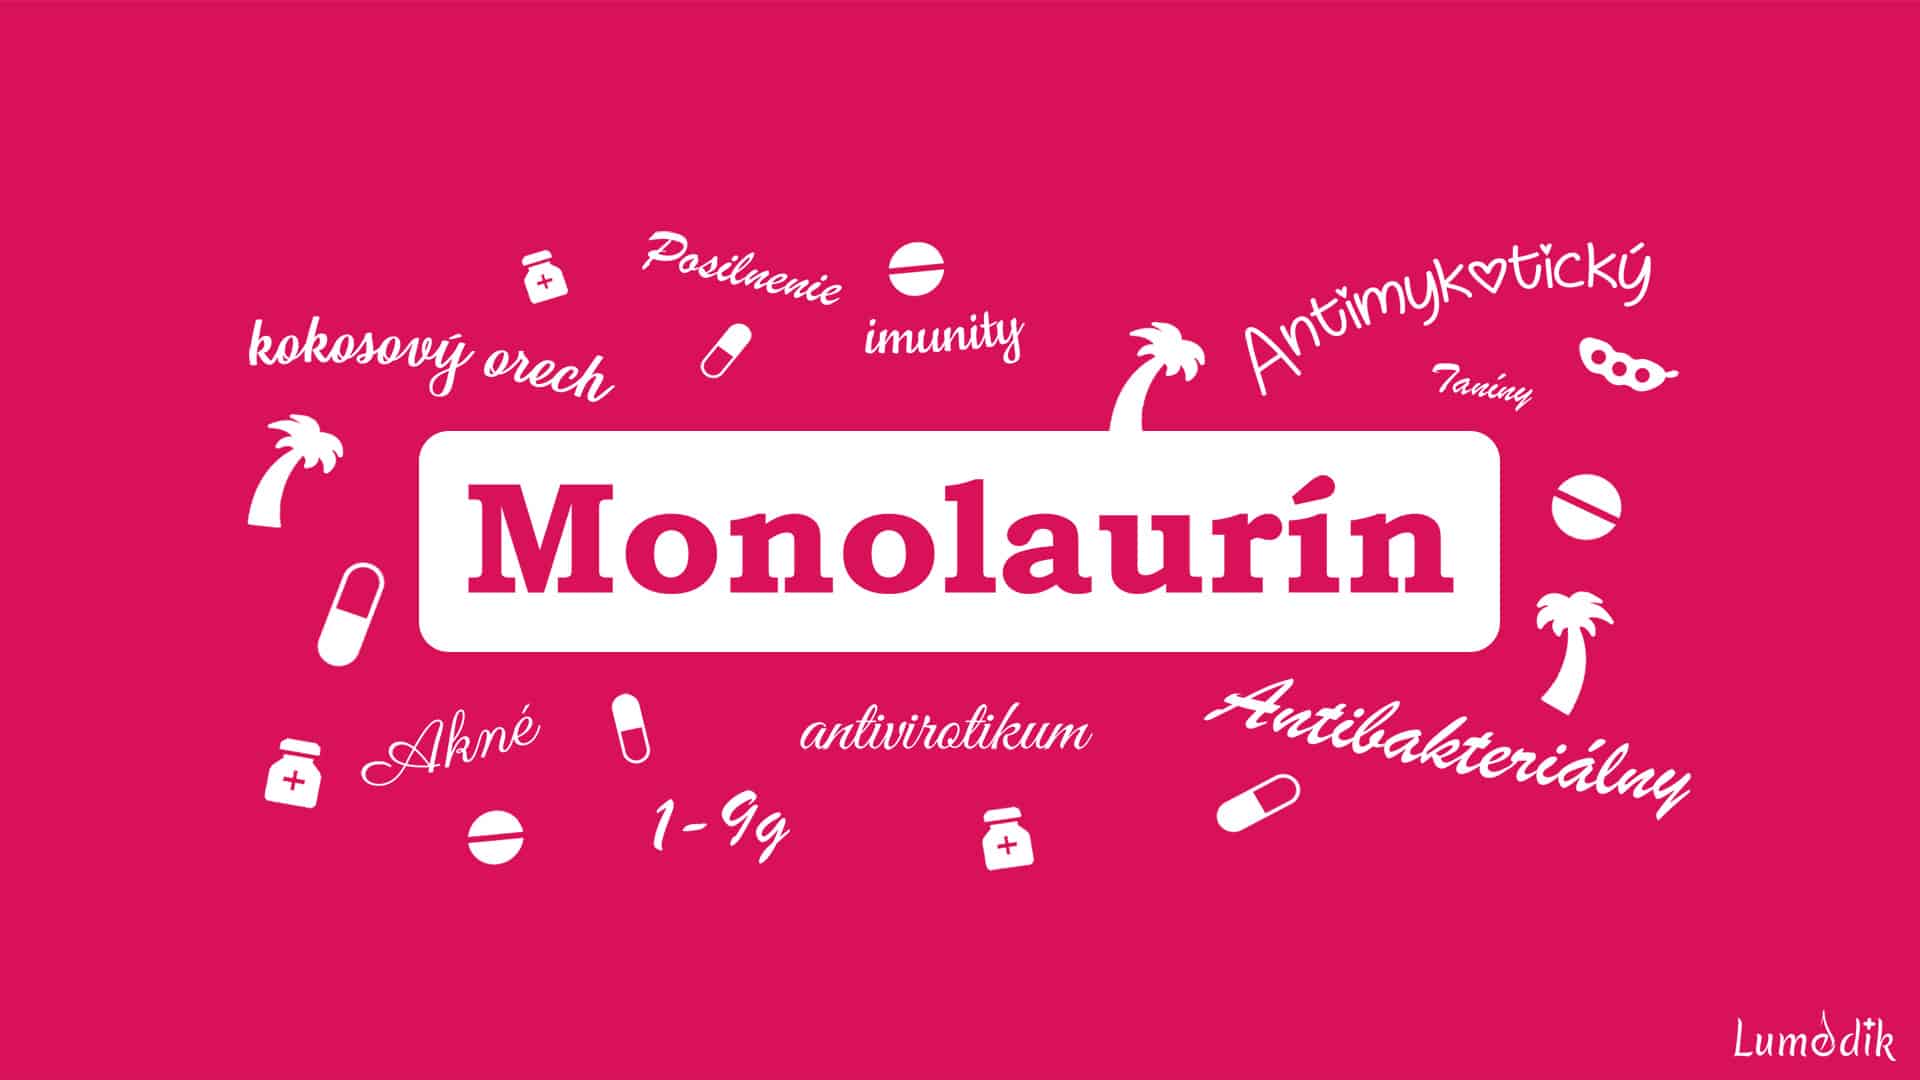 monolaurín a jeho vlastnosti